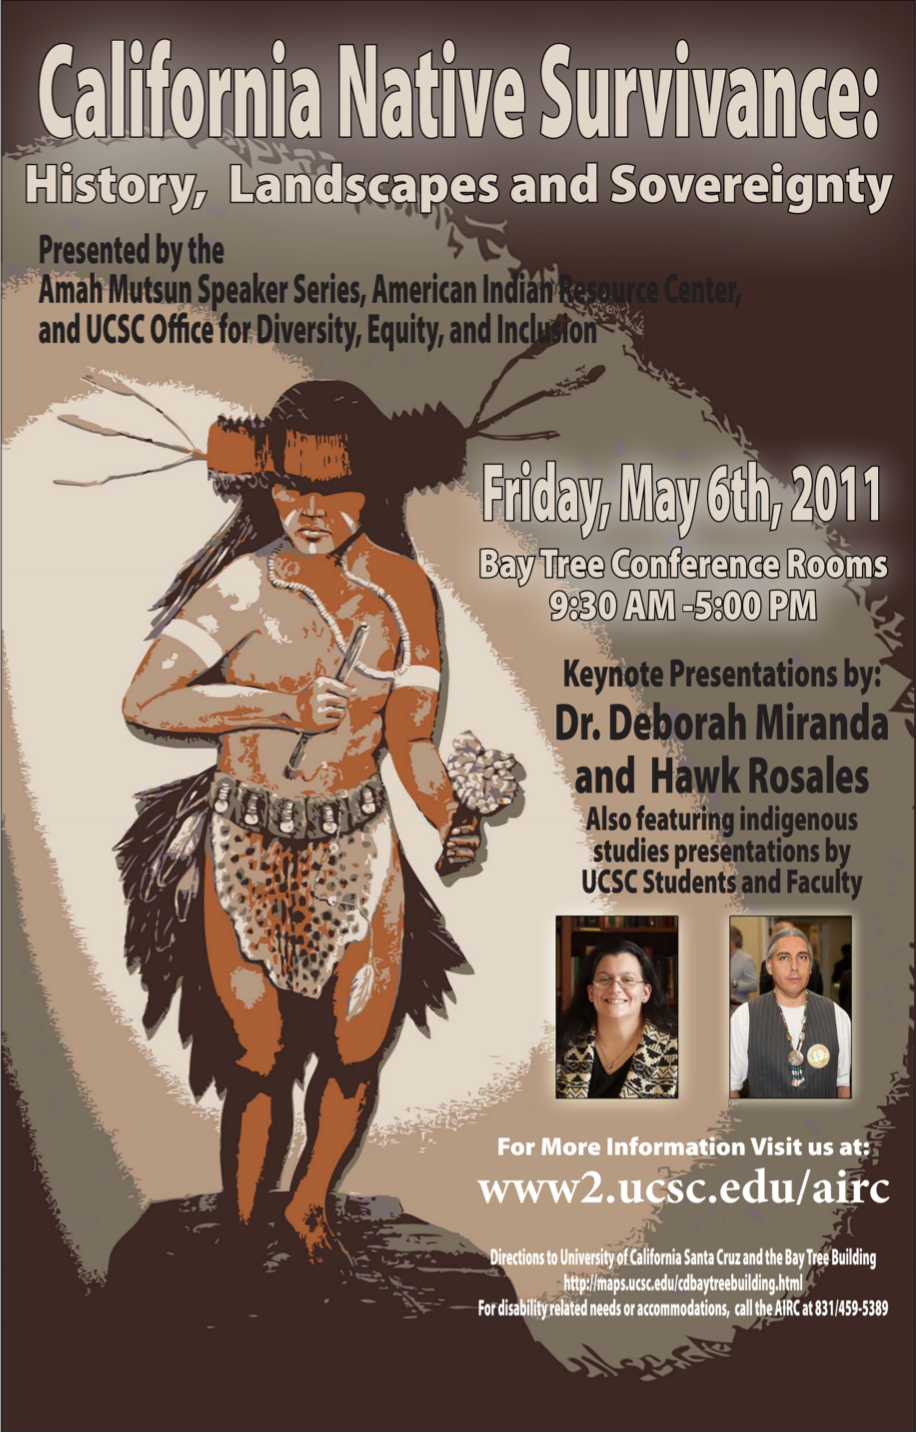 Amah Mutsun Speaker Series: California Native Survivance  with keynote speakers Dr. Deborah Miranda and Hawk Rosales